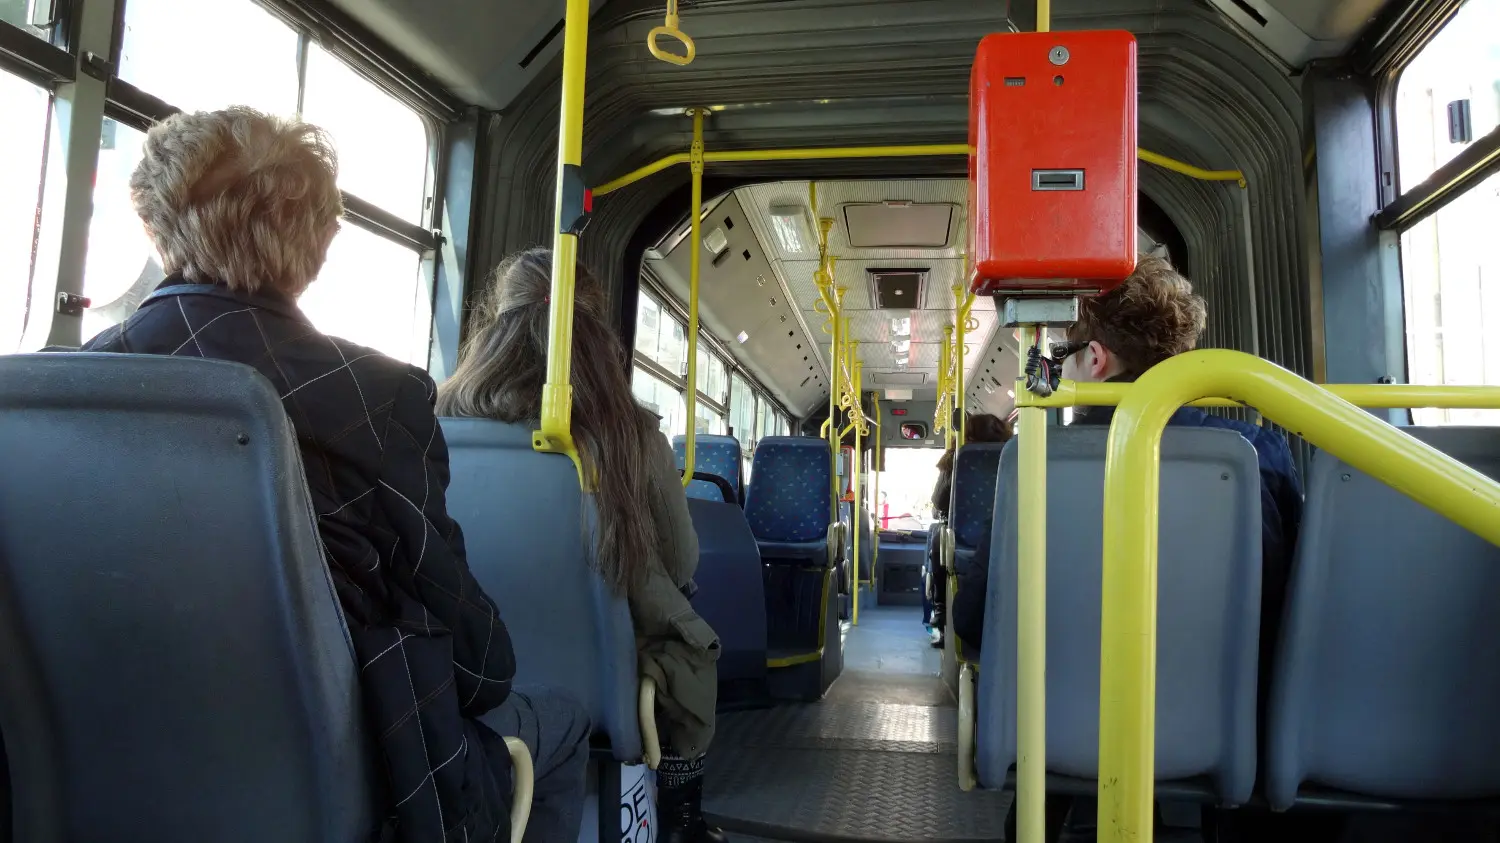 Αττική: Επιβάτιδα πηδάει από παράθυρο λεωφορείου για να αποφύγει έλεγχο – Βίντεο ντοκουμέντο